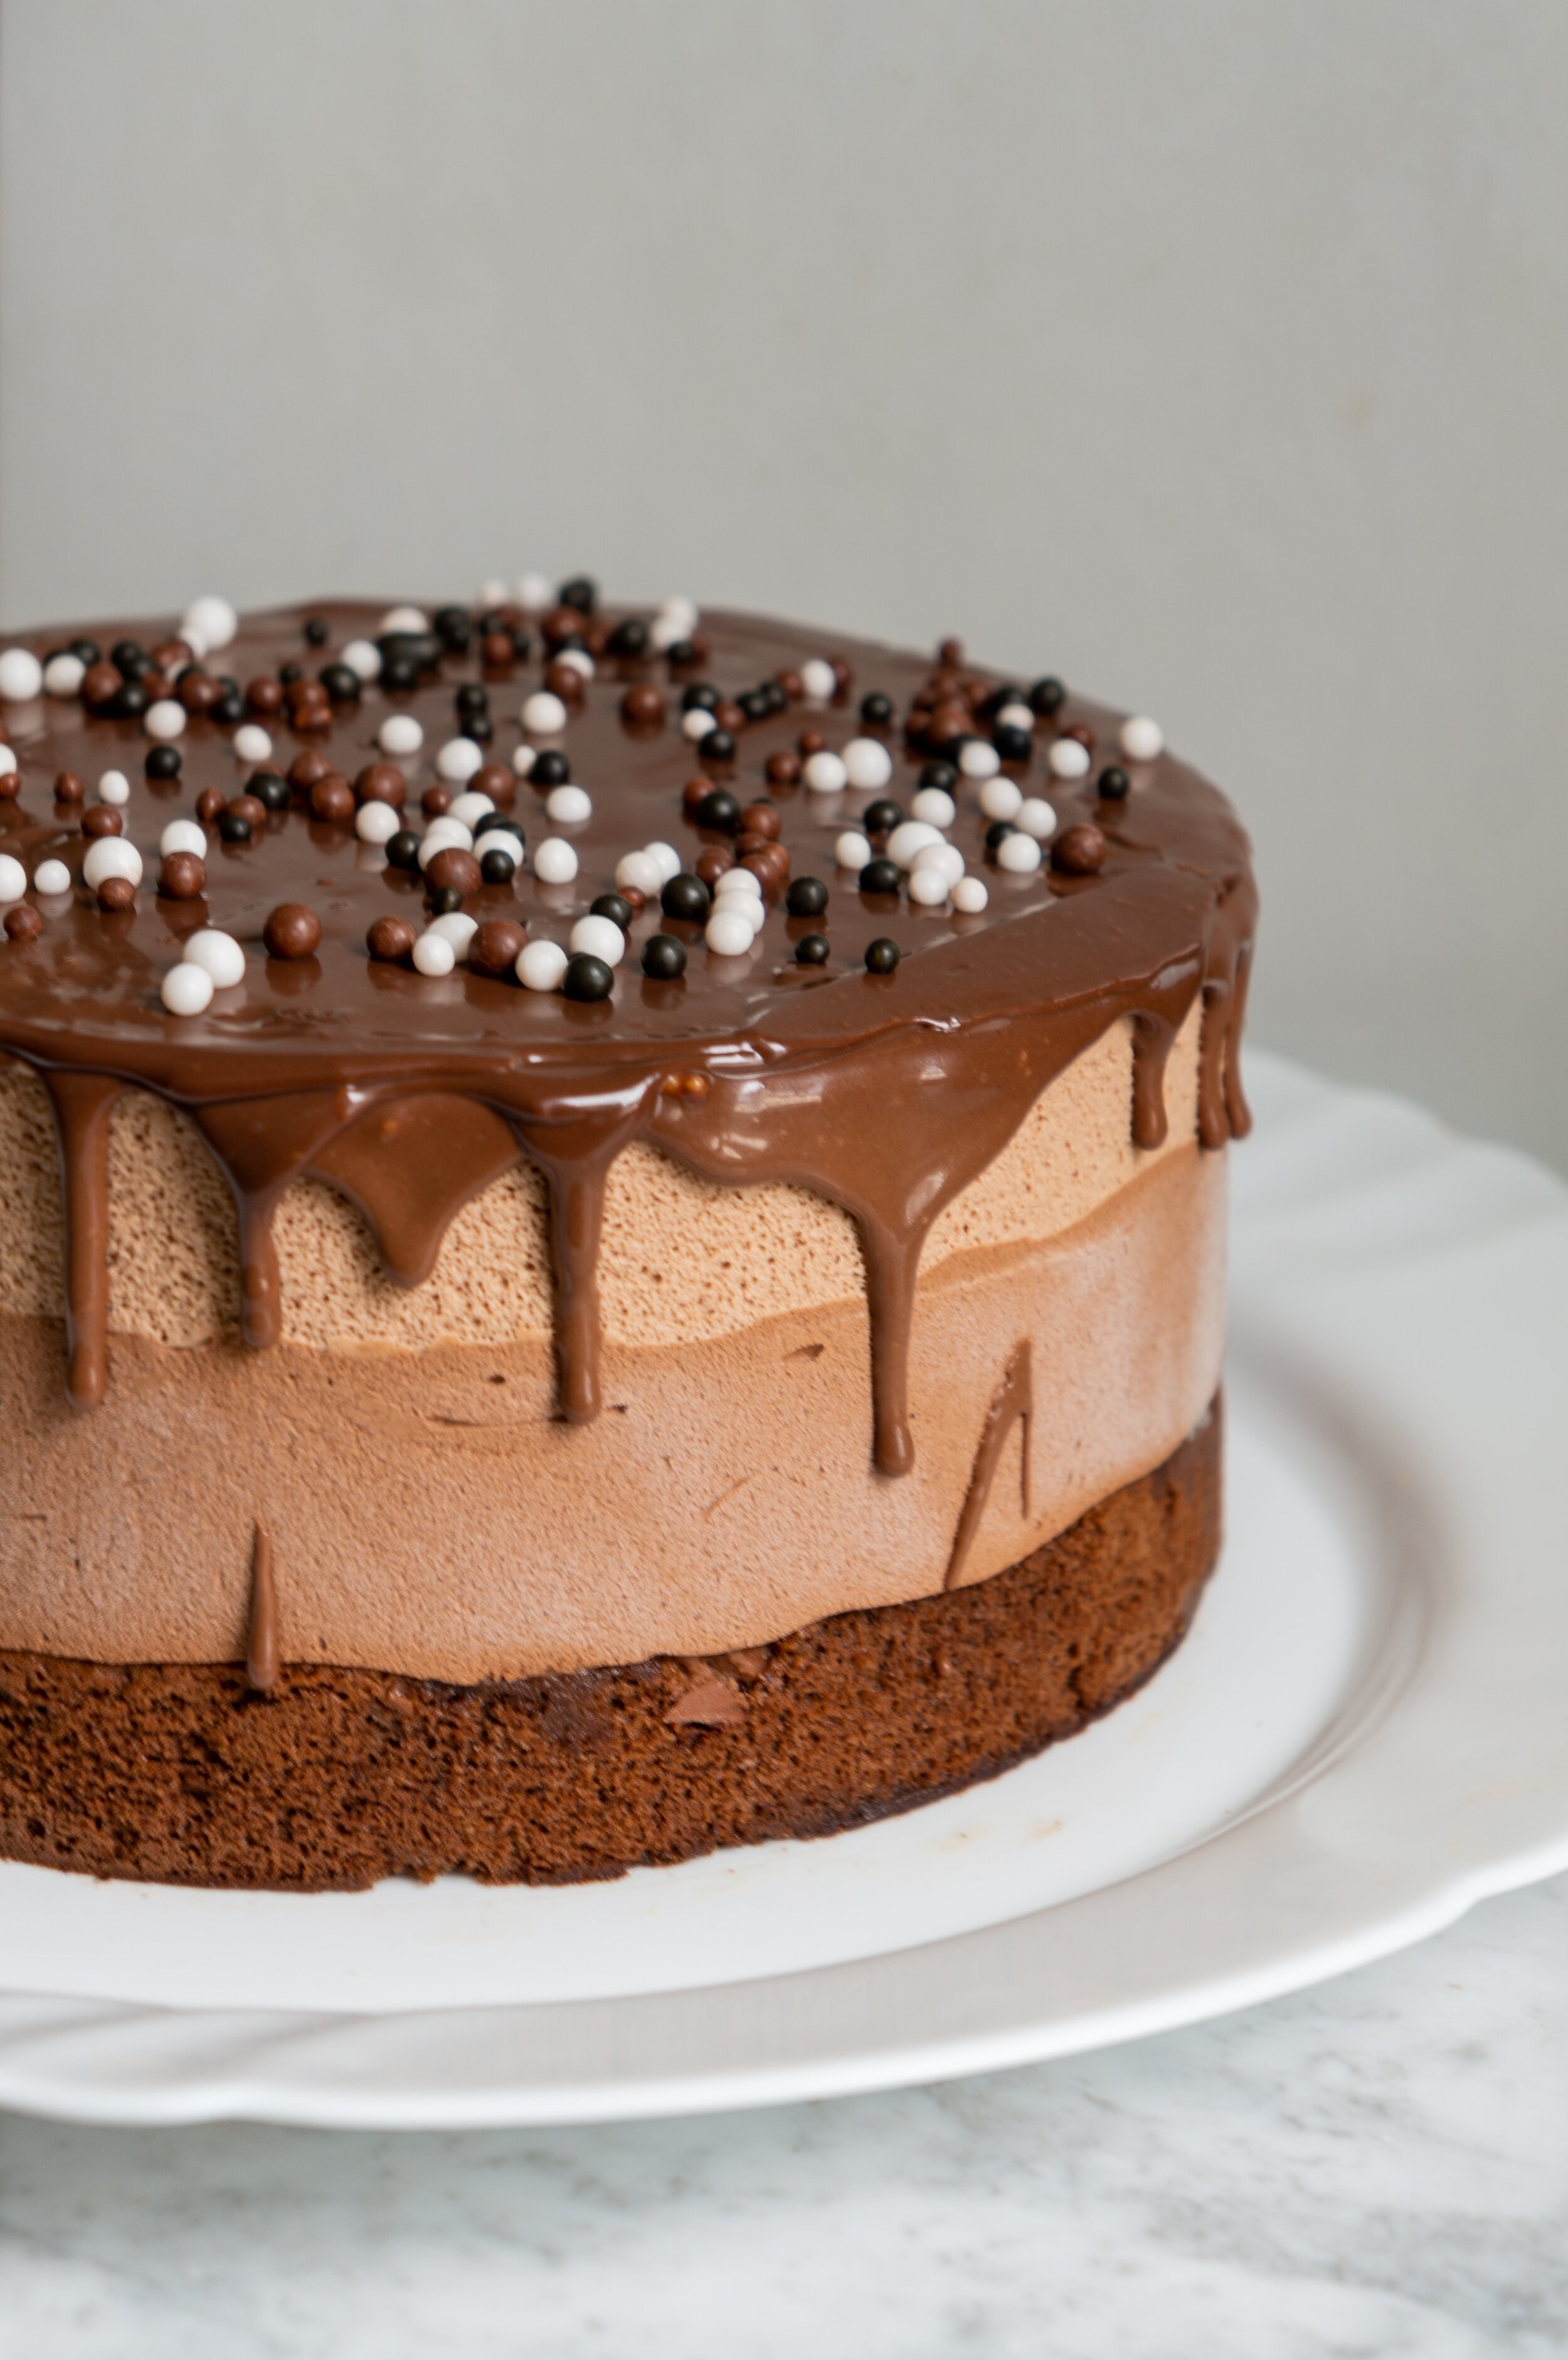 Desserts extraordinaires au Cake Factory - Les de Juliette